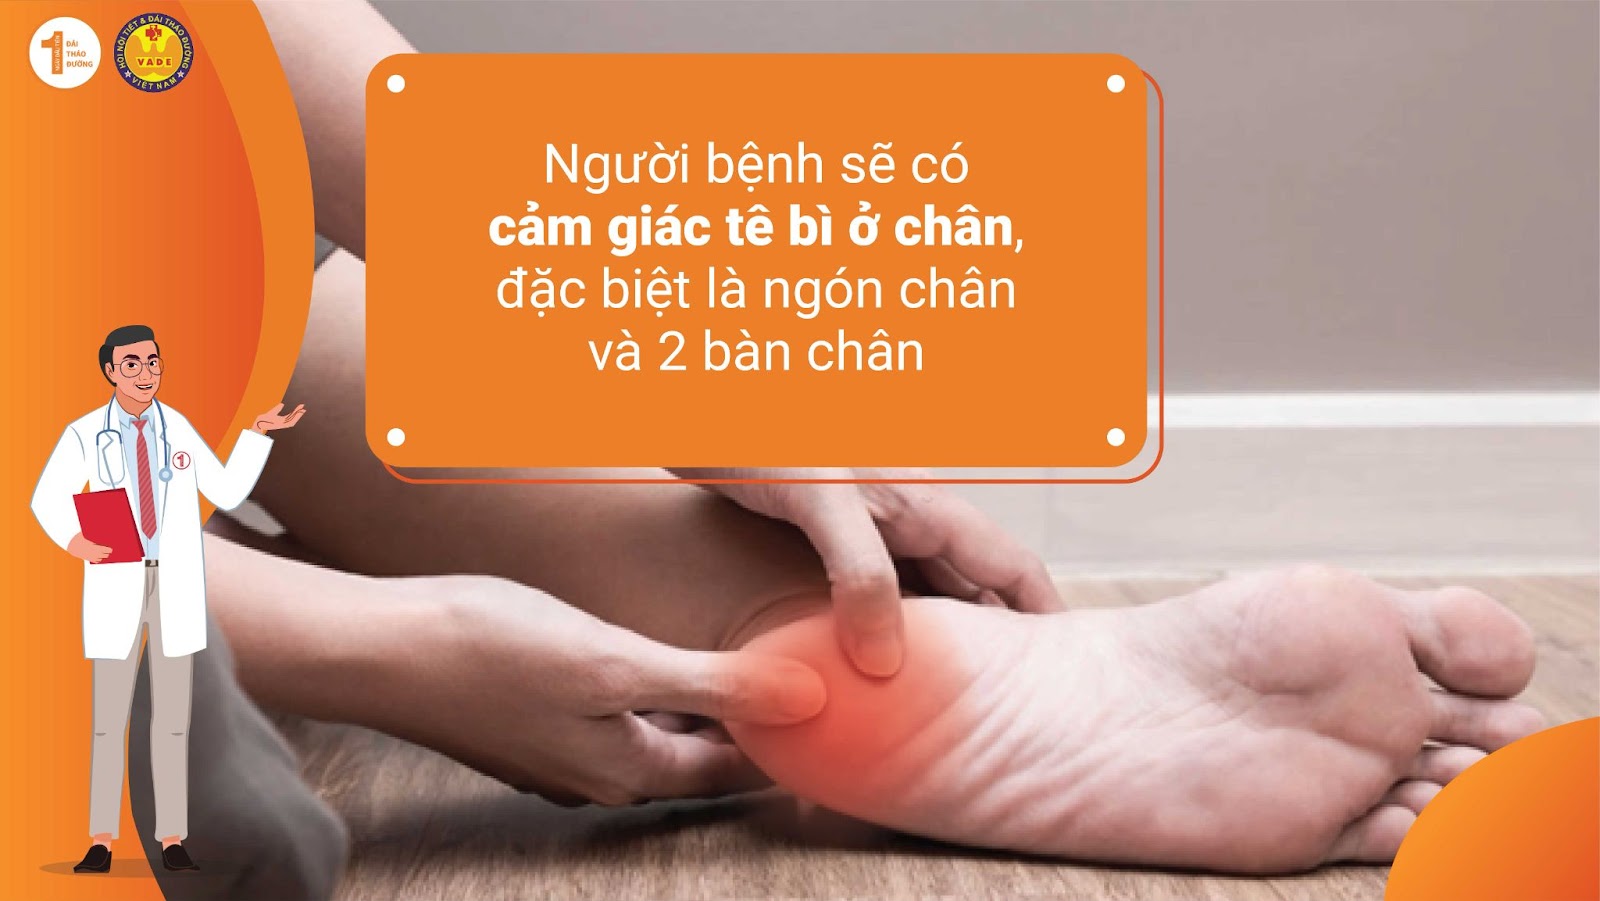 Người bệnh sẽ có cảm giác tê bì ở chân, đặc biệt là ngón chân và bàn chân